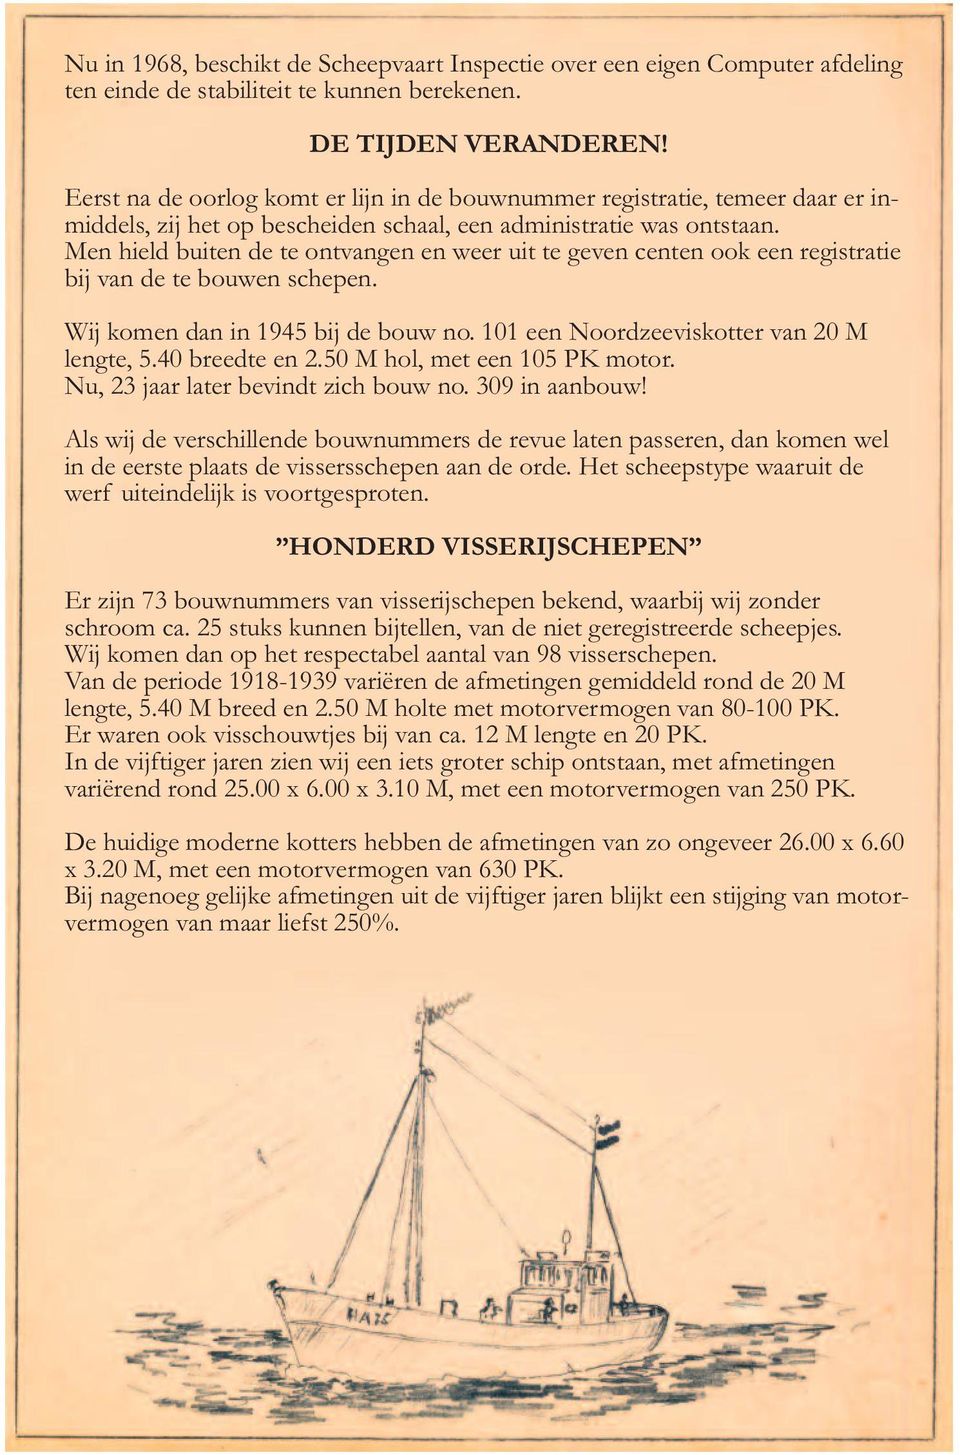 Men hield buiten de te ontvangen en weer uit te geven centen ook een registratie bij van de te bouwen schepen. Wij komen dan in 1945 bij de bouw no. 101 een Noordzeeviskotter van 20 M lengte, 5.